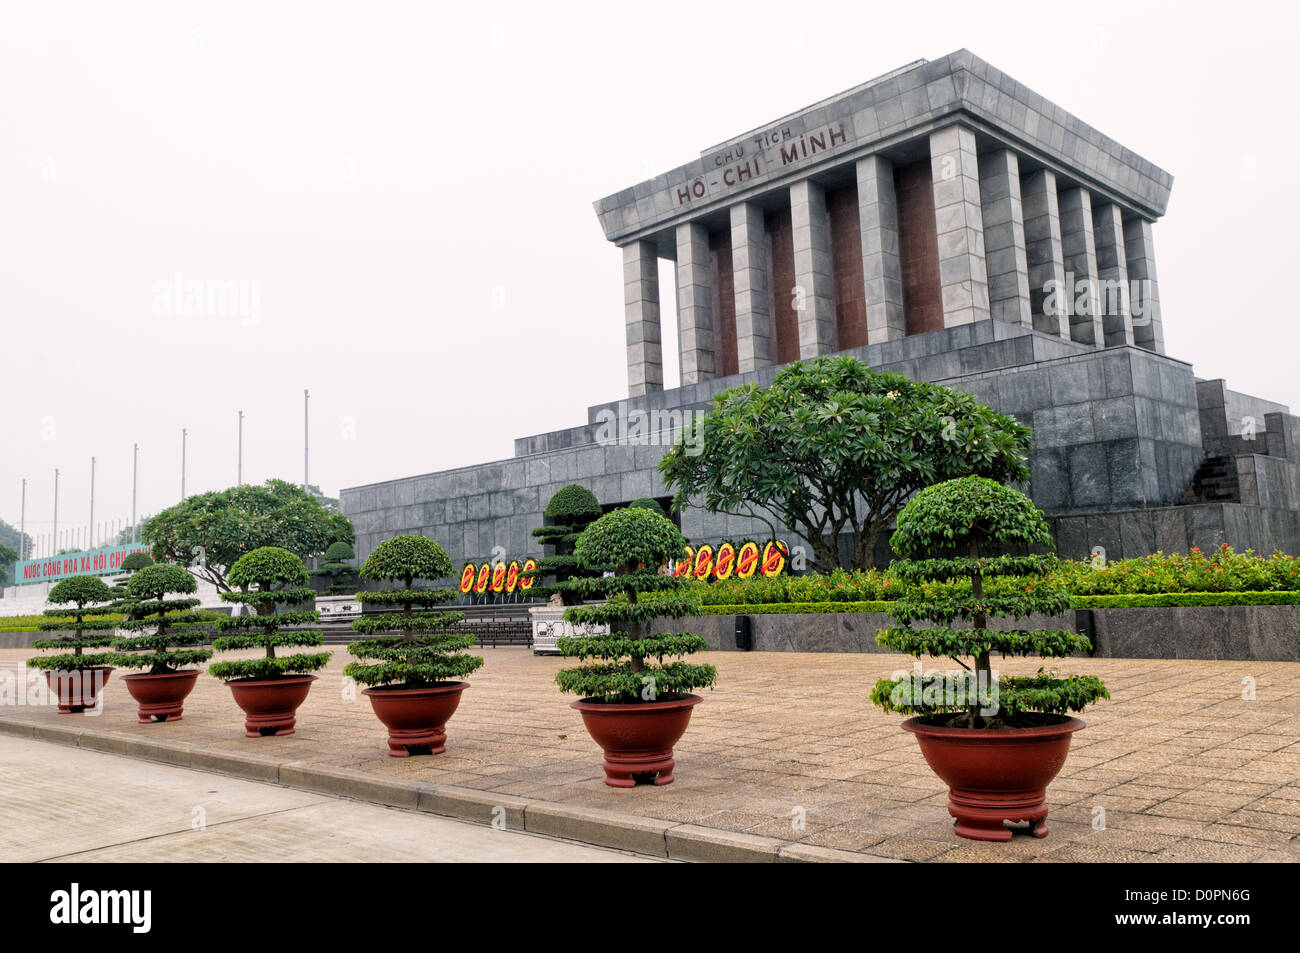 HANOI, Vietnam - il mausoleo di Ho Chi Minh da 45 gradi laterale ad angolo. Un memoriale di grandi dimensioni nel centro di Hanoi circondato da Ba Dinh Square, il Mausoleo di Ho Chi Minh ospita il corpo imbalsamato dell ex leader vietnamita e presidente fondatore Ho Chi Minh. Foto Stock